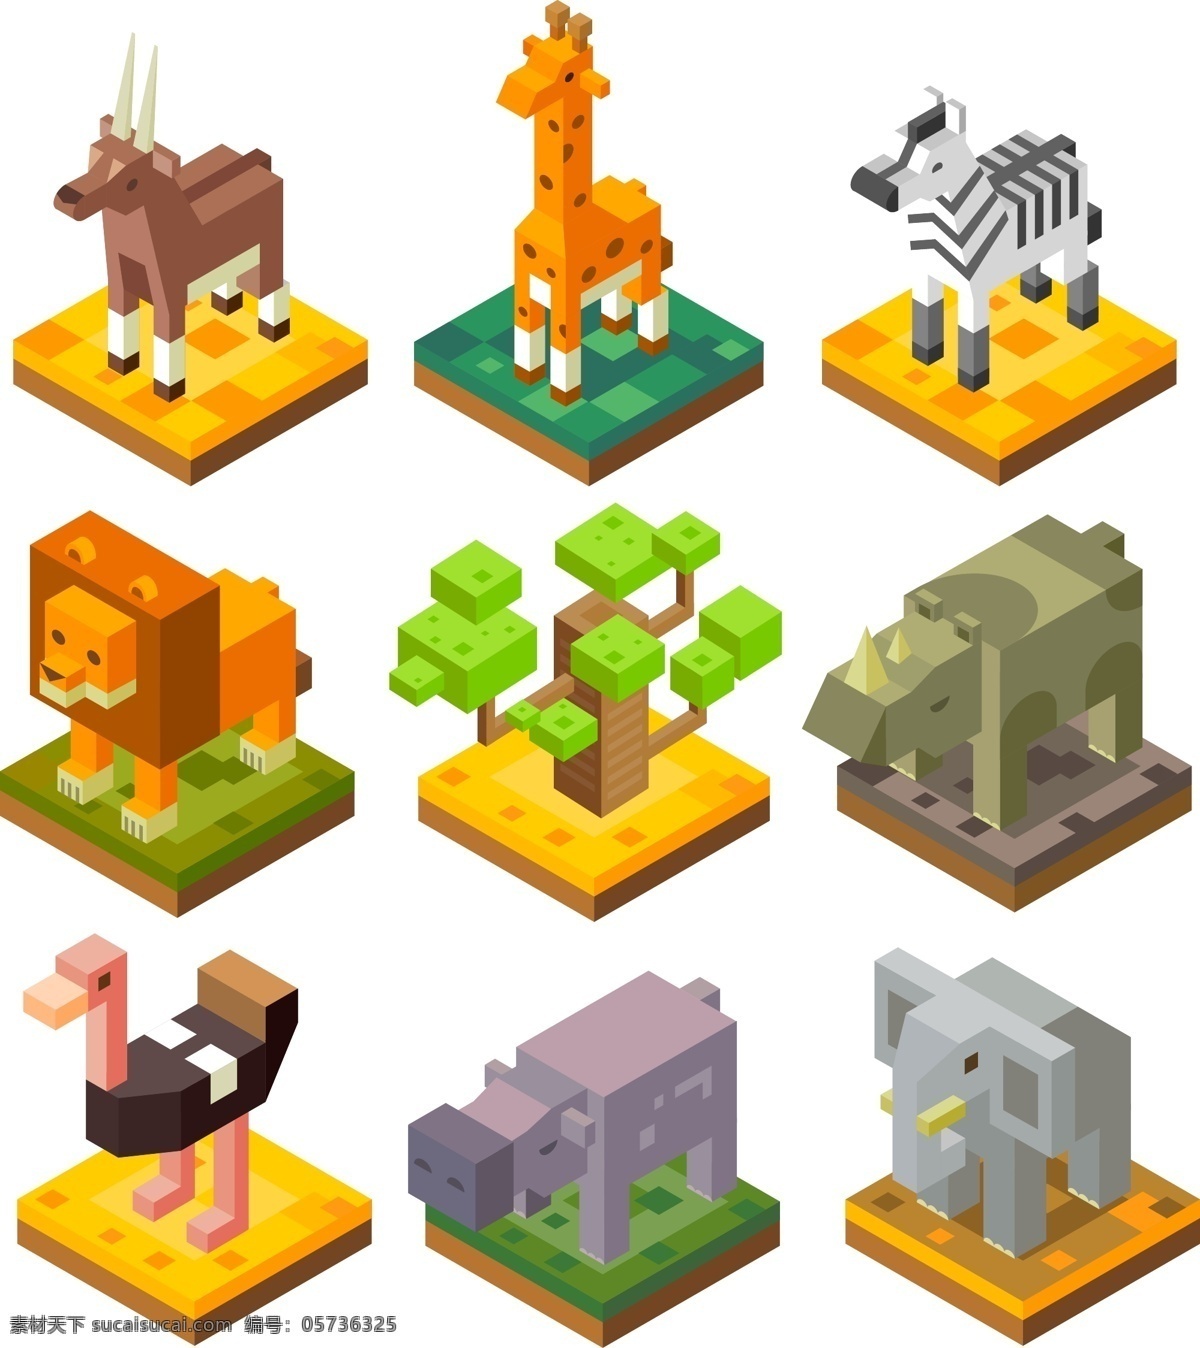 折纸动物 3d动物 狮子 鹿 大象 大树 斑马 矢量 卡通动物 动物 立体 设计素材 风格 动物卡通 卡通立体 立体卡通 风格卡通 立体动物 折纸 动物设计素材 卡通设计